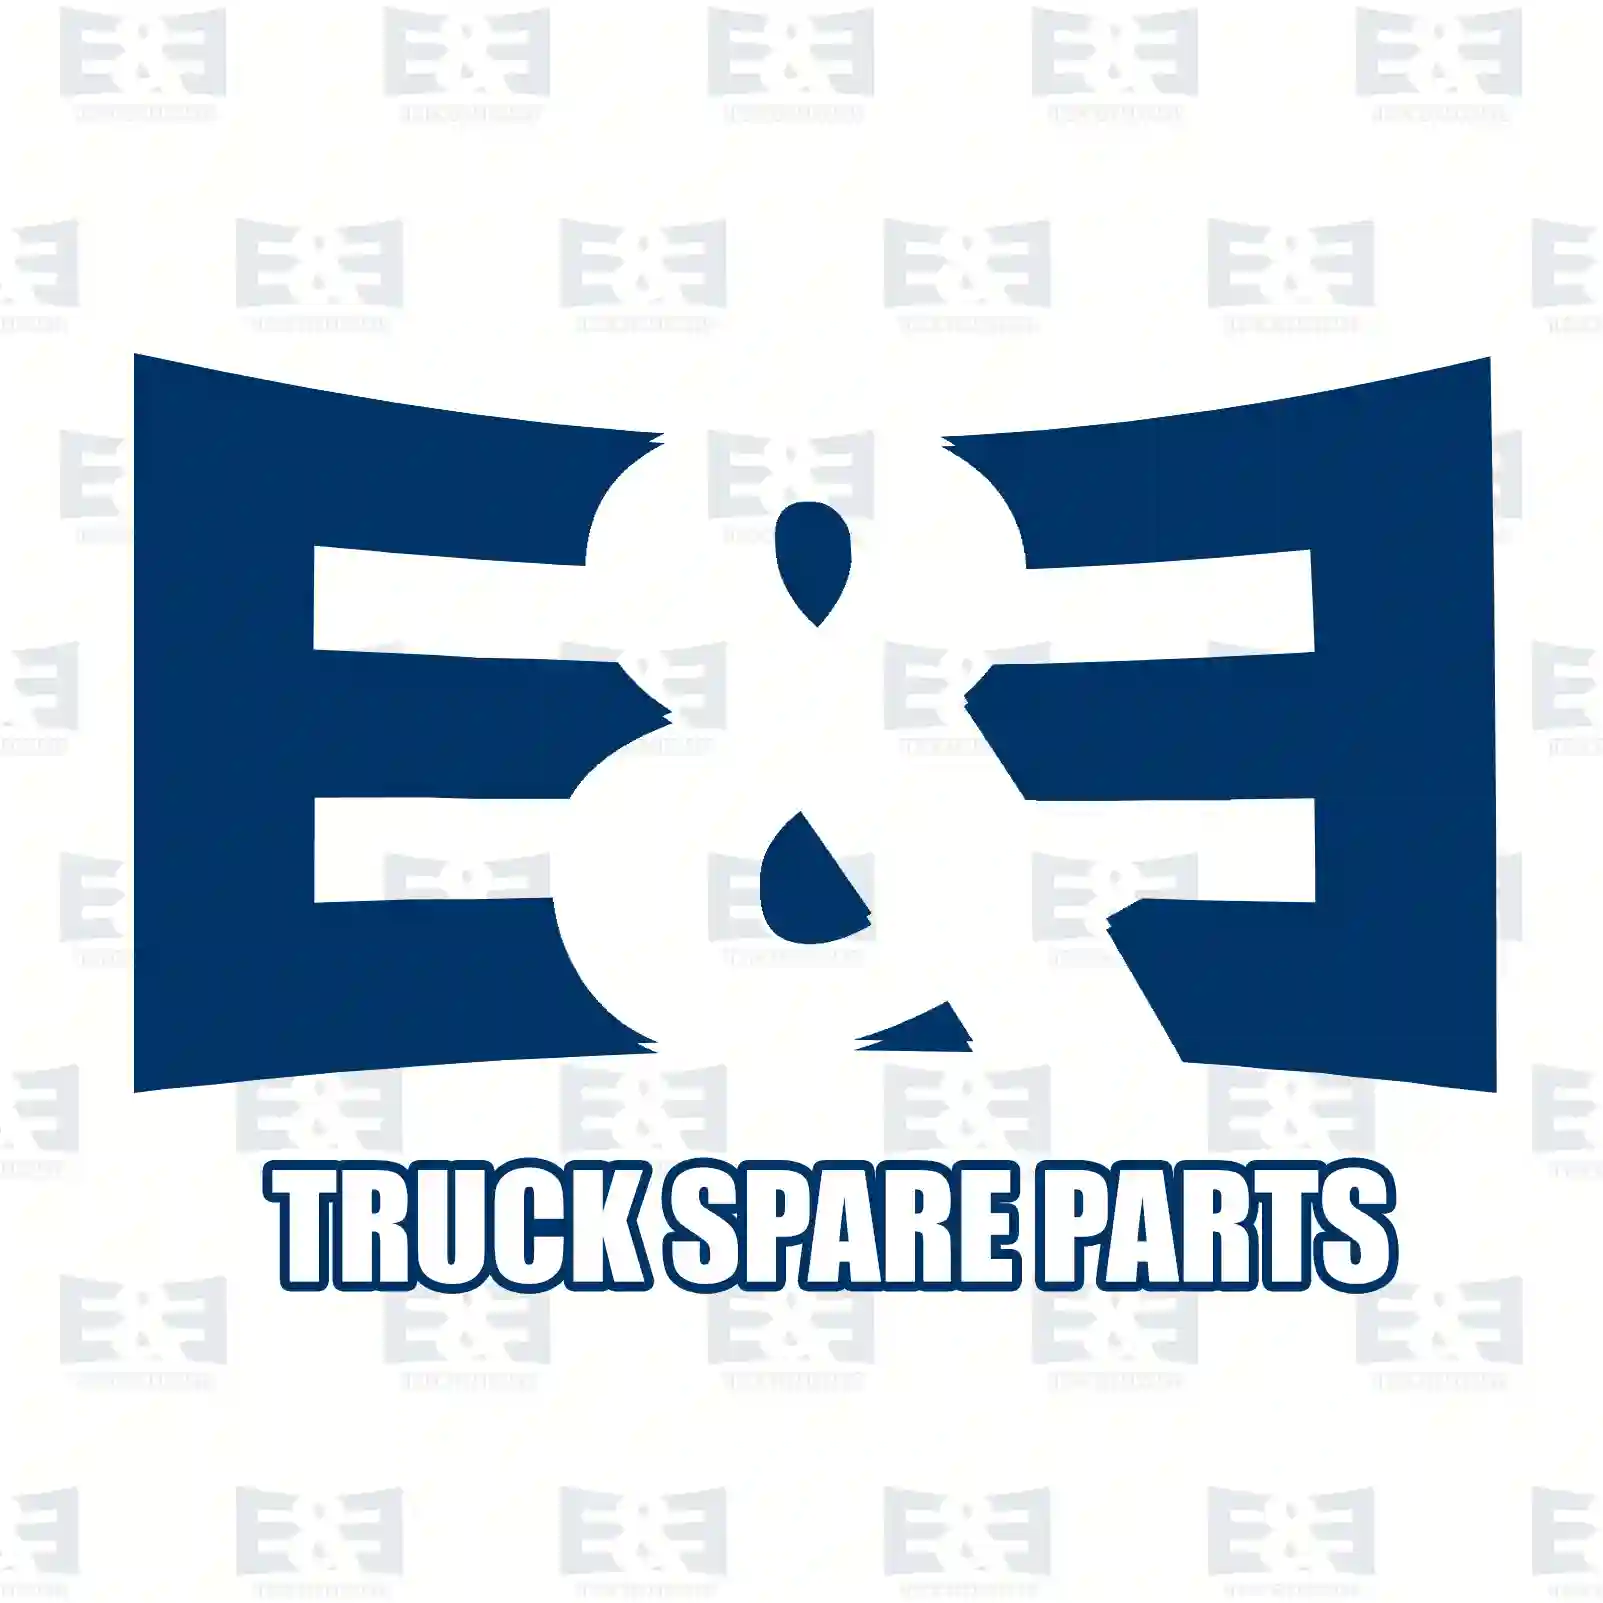 Brake caliper, right, reman. / without old core, 2E2294026, LRG597, MXC9306008, 20401811, 20424075, 20852530, 21120761, 3095620, 85003243, 85003250, 85106928 ||  2E2294026 E&E Truck Spare Parts | Truck Spare Parts, Auotomotive Spare Parts Brake caliper, right, reman. / without old core, 2E2294026, LRG597, MXC9306008, 20401811, 20424075, 20852530, 21120761, 3095620, 85003243, 85003250, 85106928 ||  2E2294026 E&E Truck Spare Parts | Truck Spare Parts, Auotomotive Spare Parts